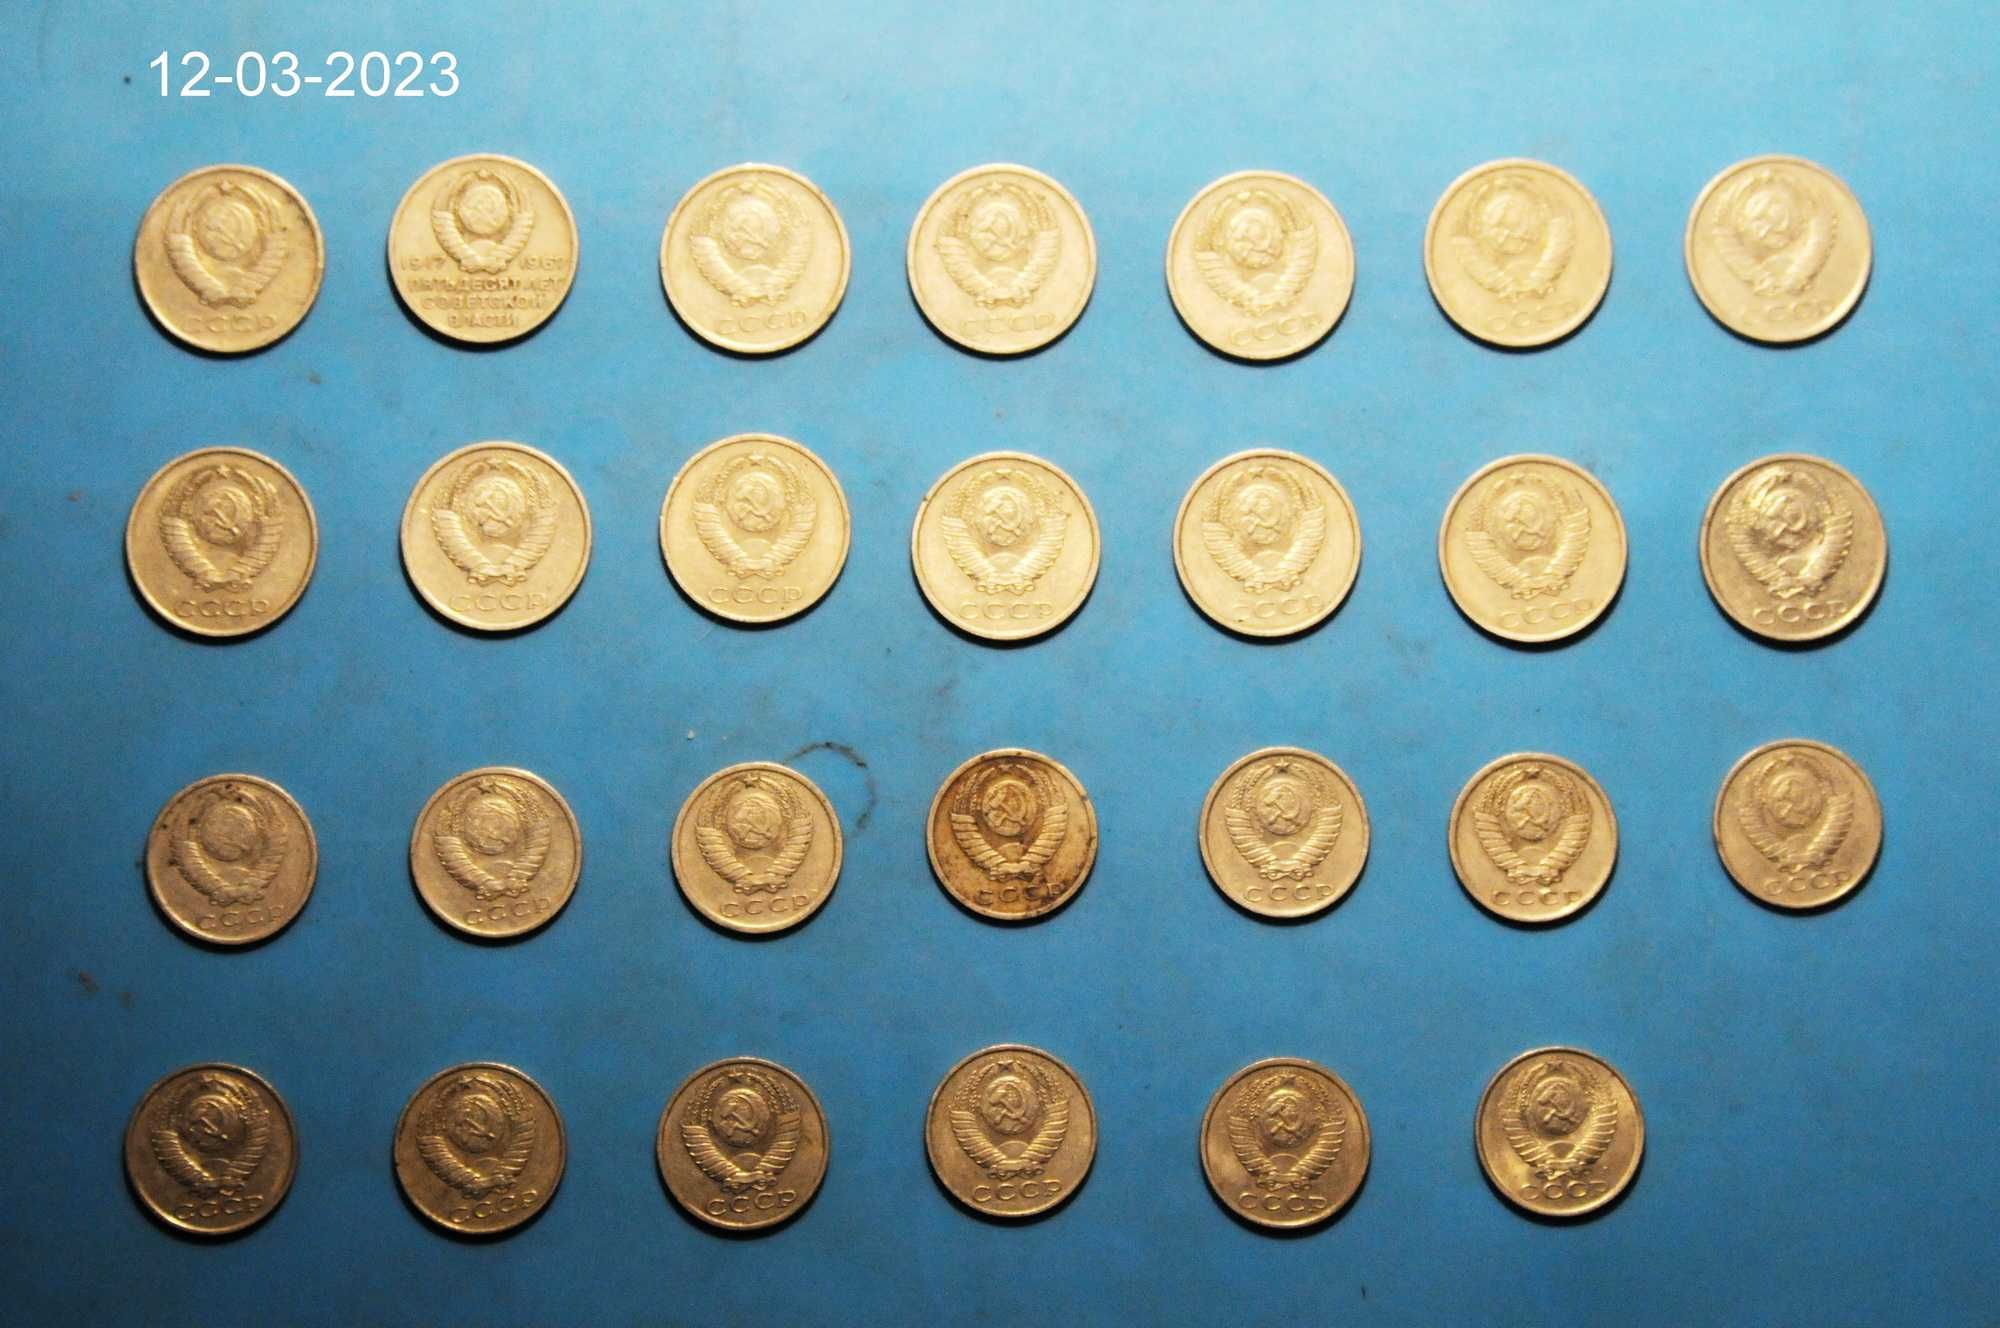 Набор монет 15 и 20 копеек СССР по годам с 1961 по 1991 год